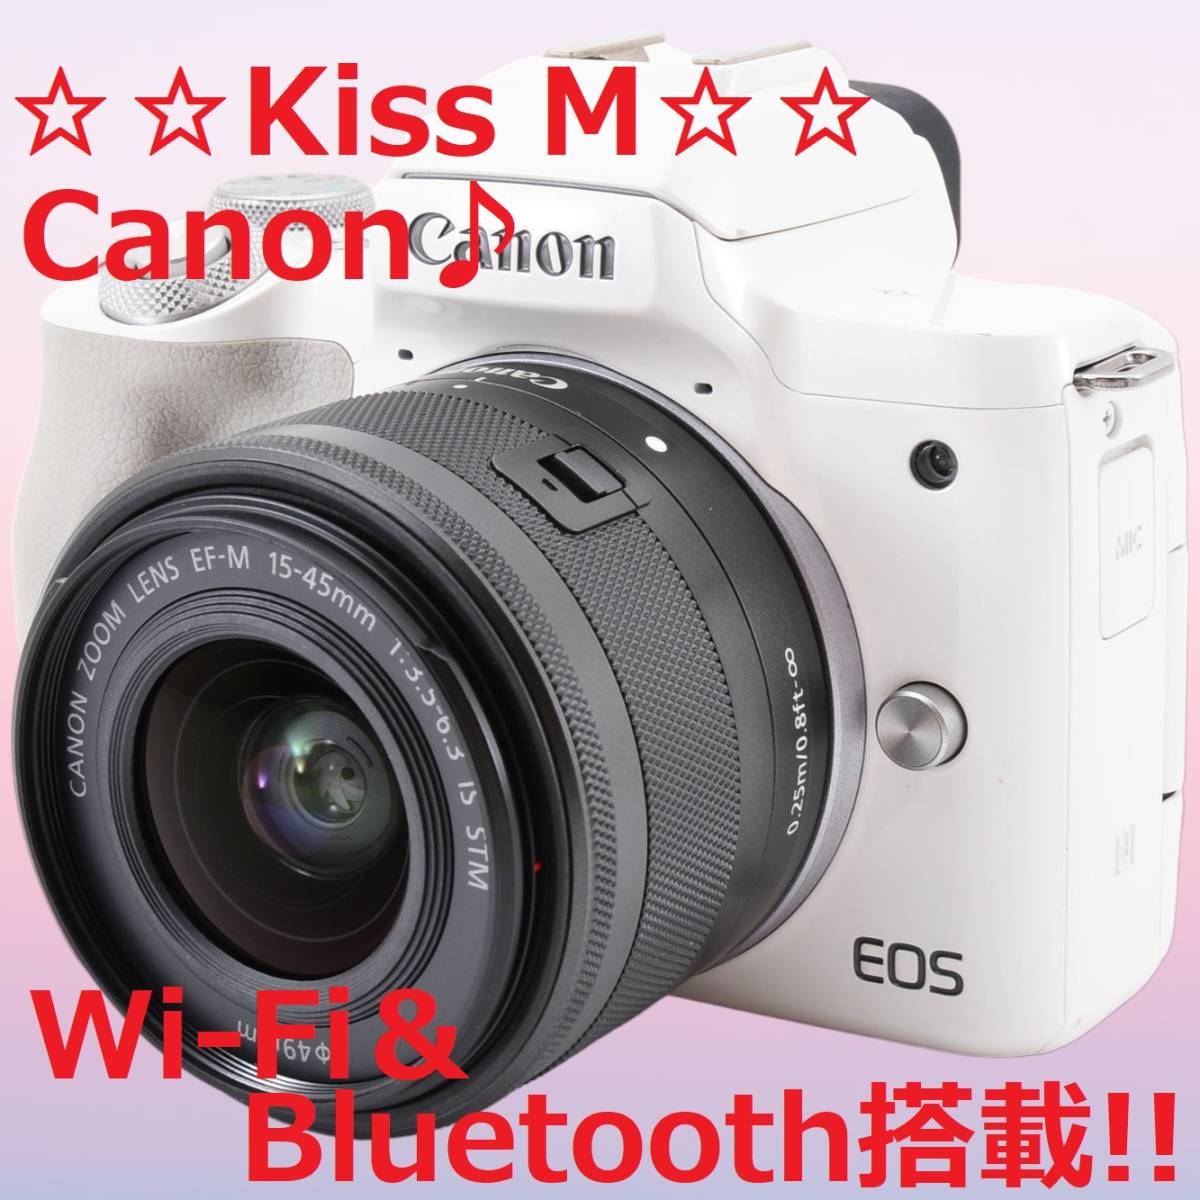 注目の Canon Wi-Fi搭載 キャノン #6208 ホワイト M Kiss EOS キヤノン